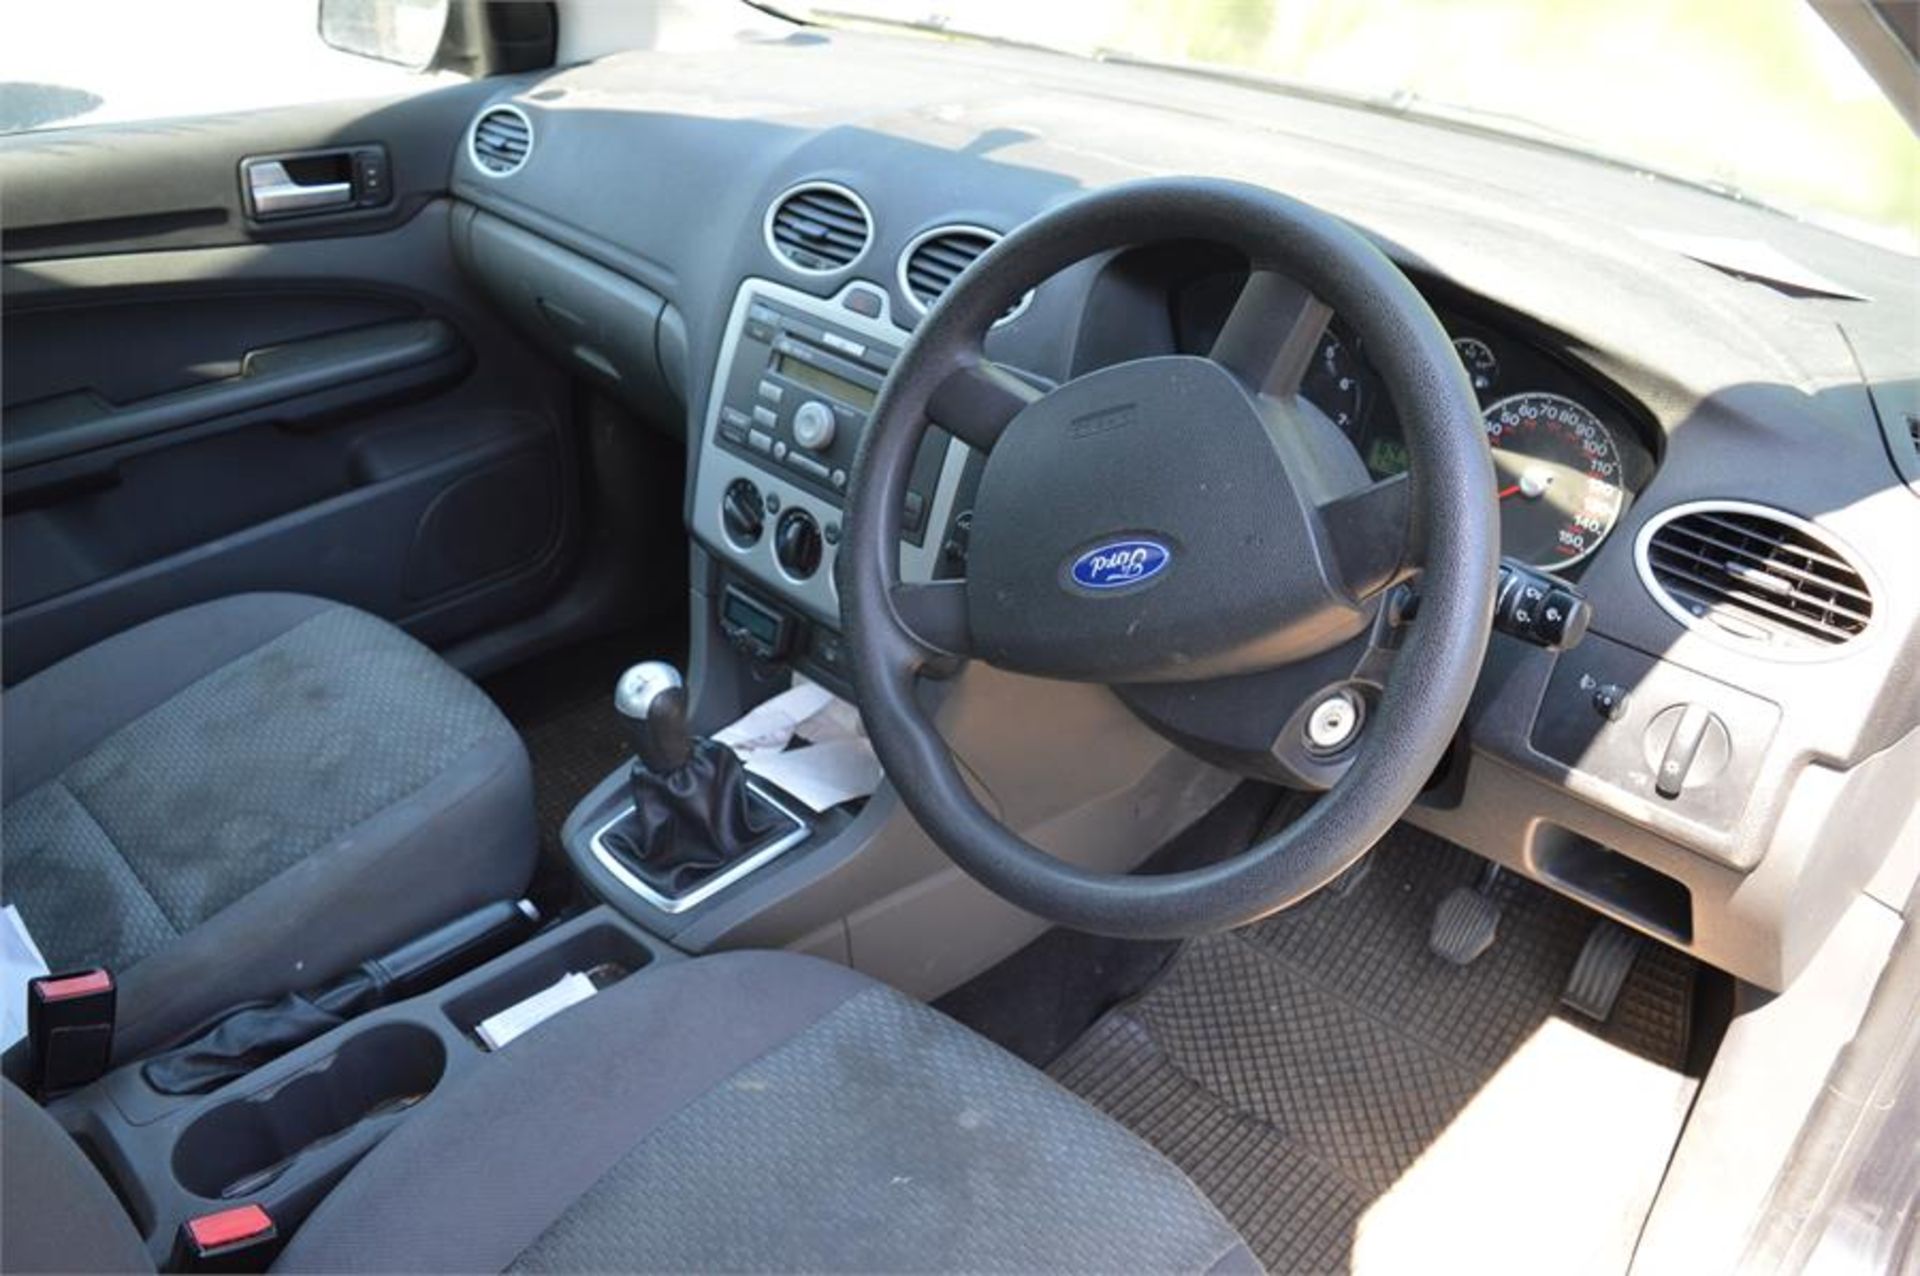 Ford, Focus LX 1.6 5 door petrol hatchback, Registration: NL06 ZKG, First Registered: 01.03.06, - Image 5 of 8